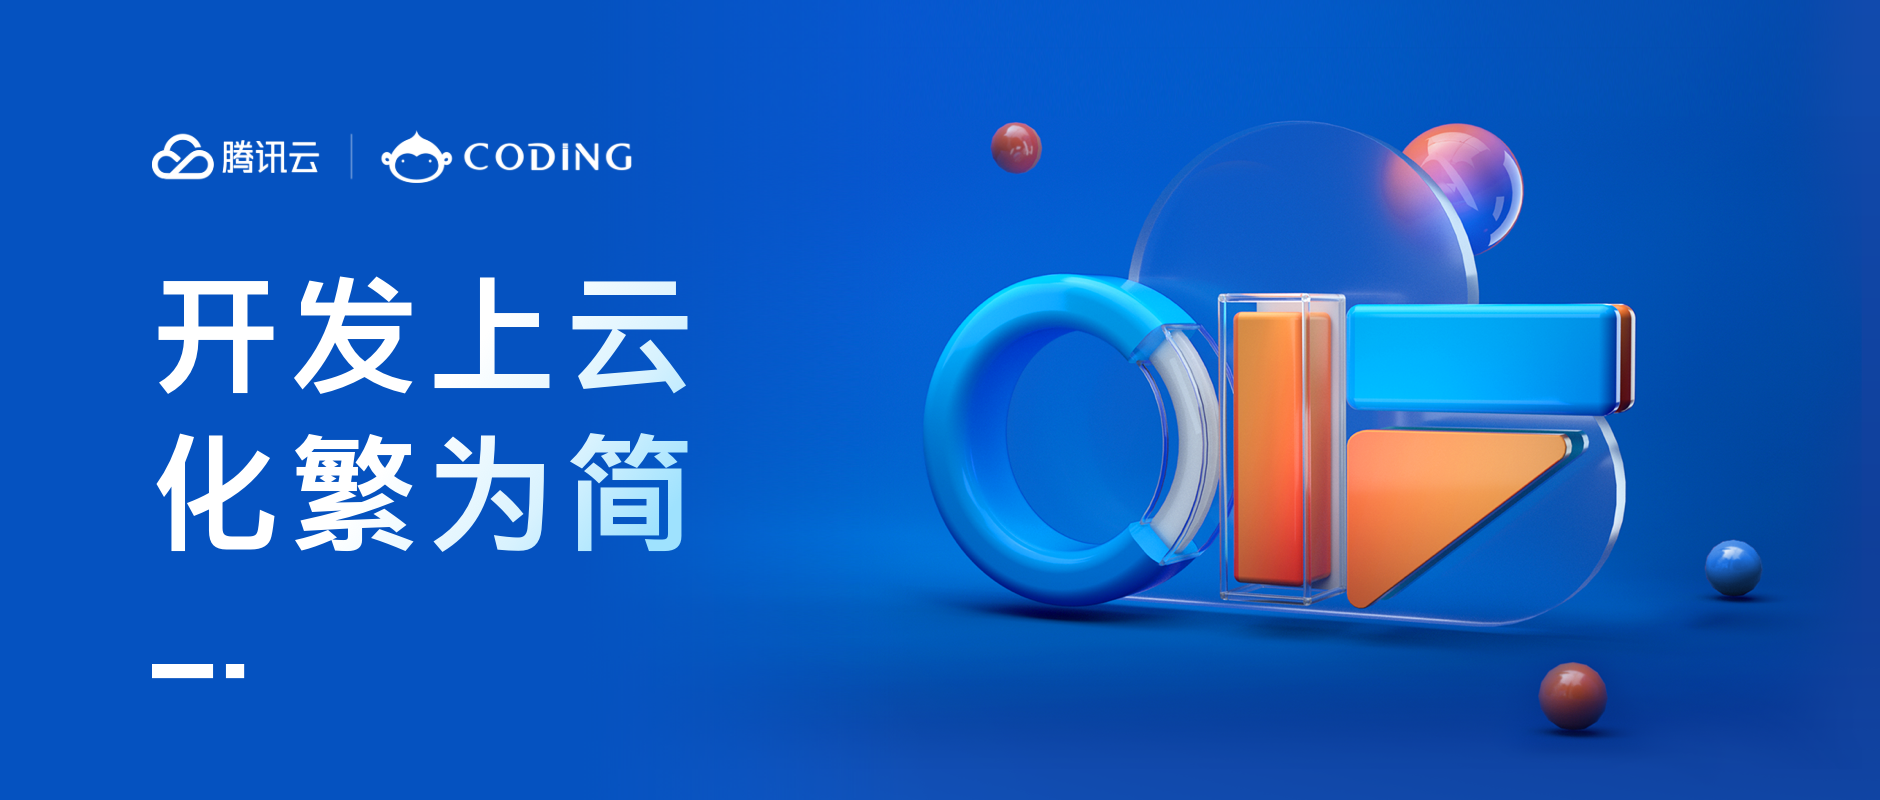 腾讯云 CIF 工程效能峰会顺利开幕，CODING 发布系列新产品